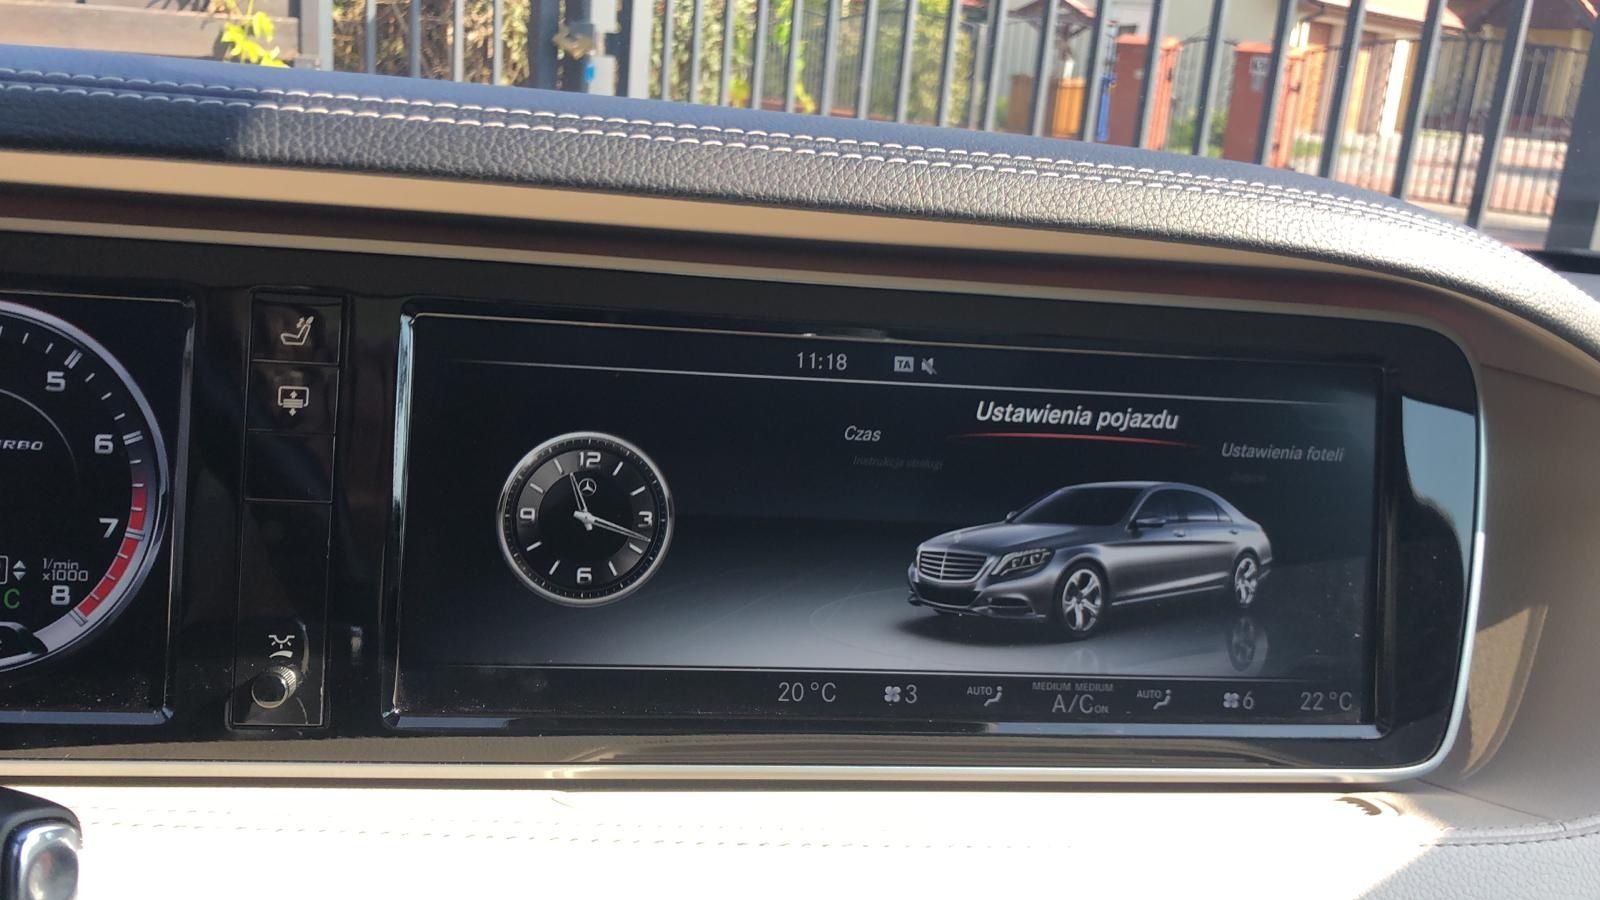 Mercedes kodowanie polski język menu mapy retrofit konwersja radio scn